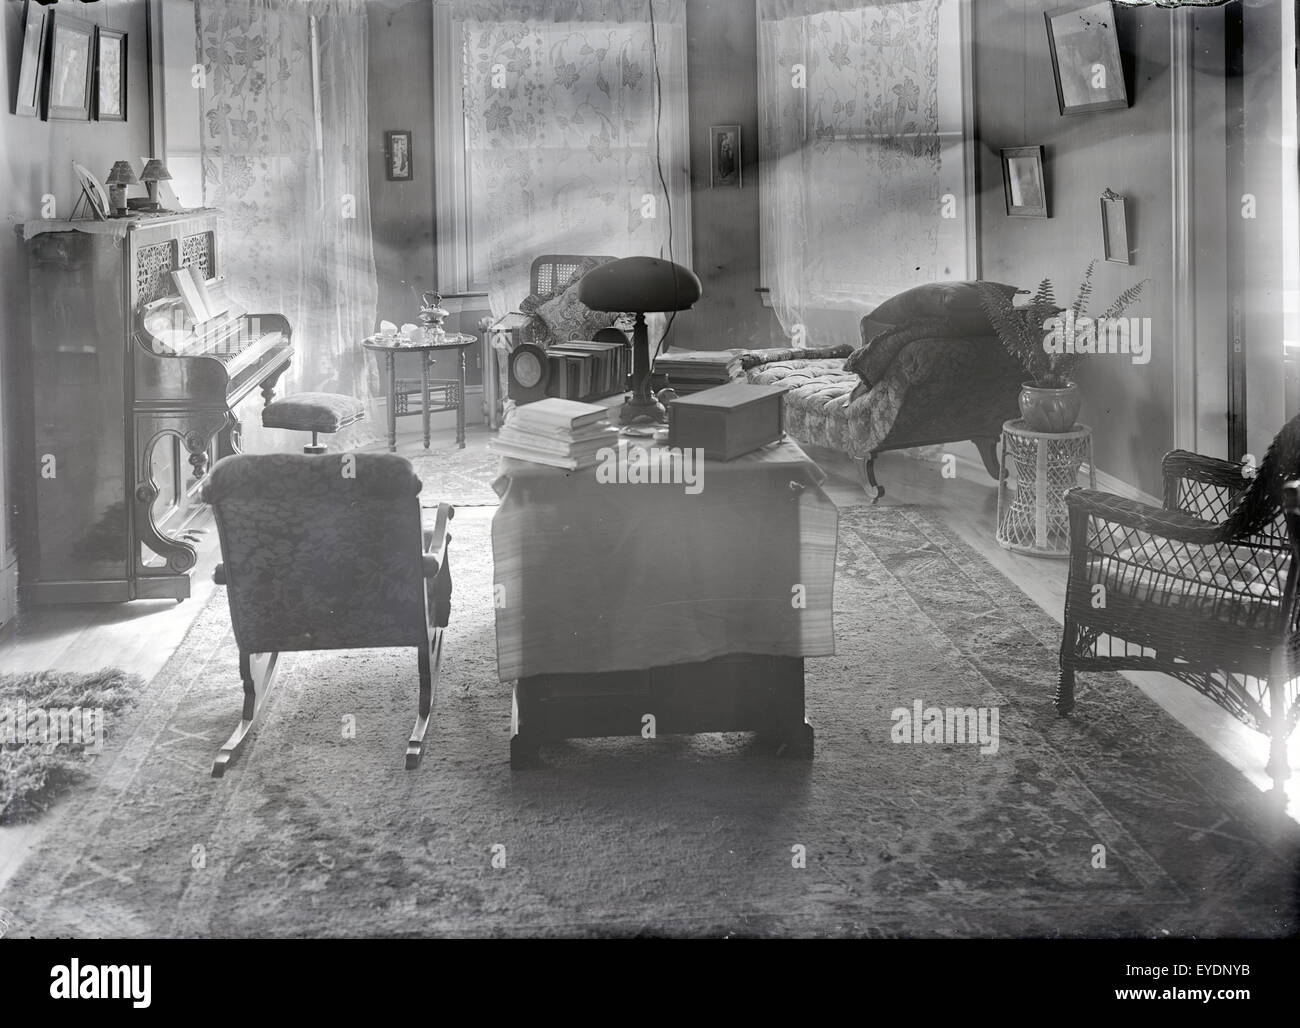 Antique c1910 fotografia di un tardo Vittoriano, circa 1910s Salone con pianoforte verticale e arredi. Vedere Alamy numero immagine EYDNYH per una vista alternativa di questa camera. Posizione sconosciuta, probabilmente il Massachusetts New England, STATI UNITI D'AMERICA. Foto Stock